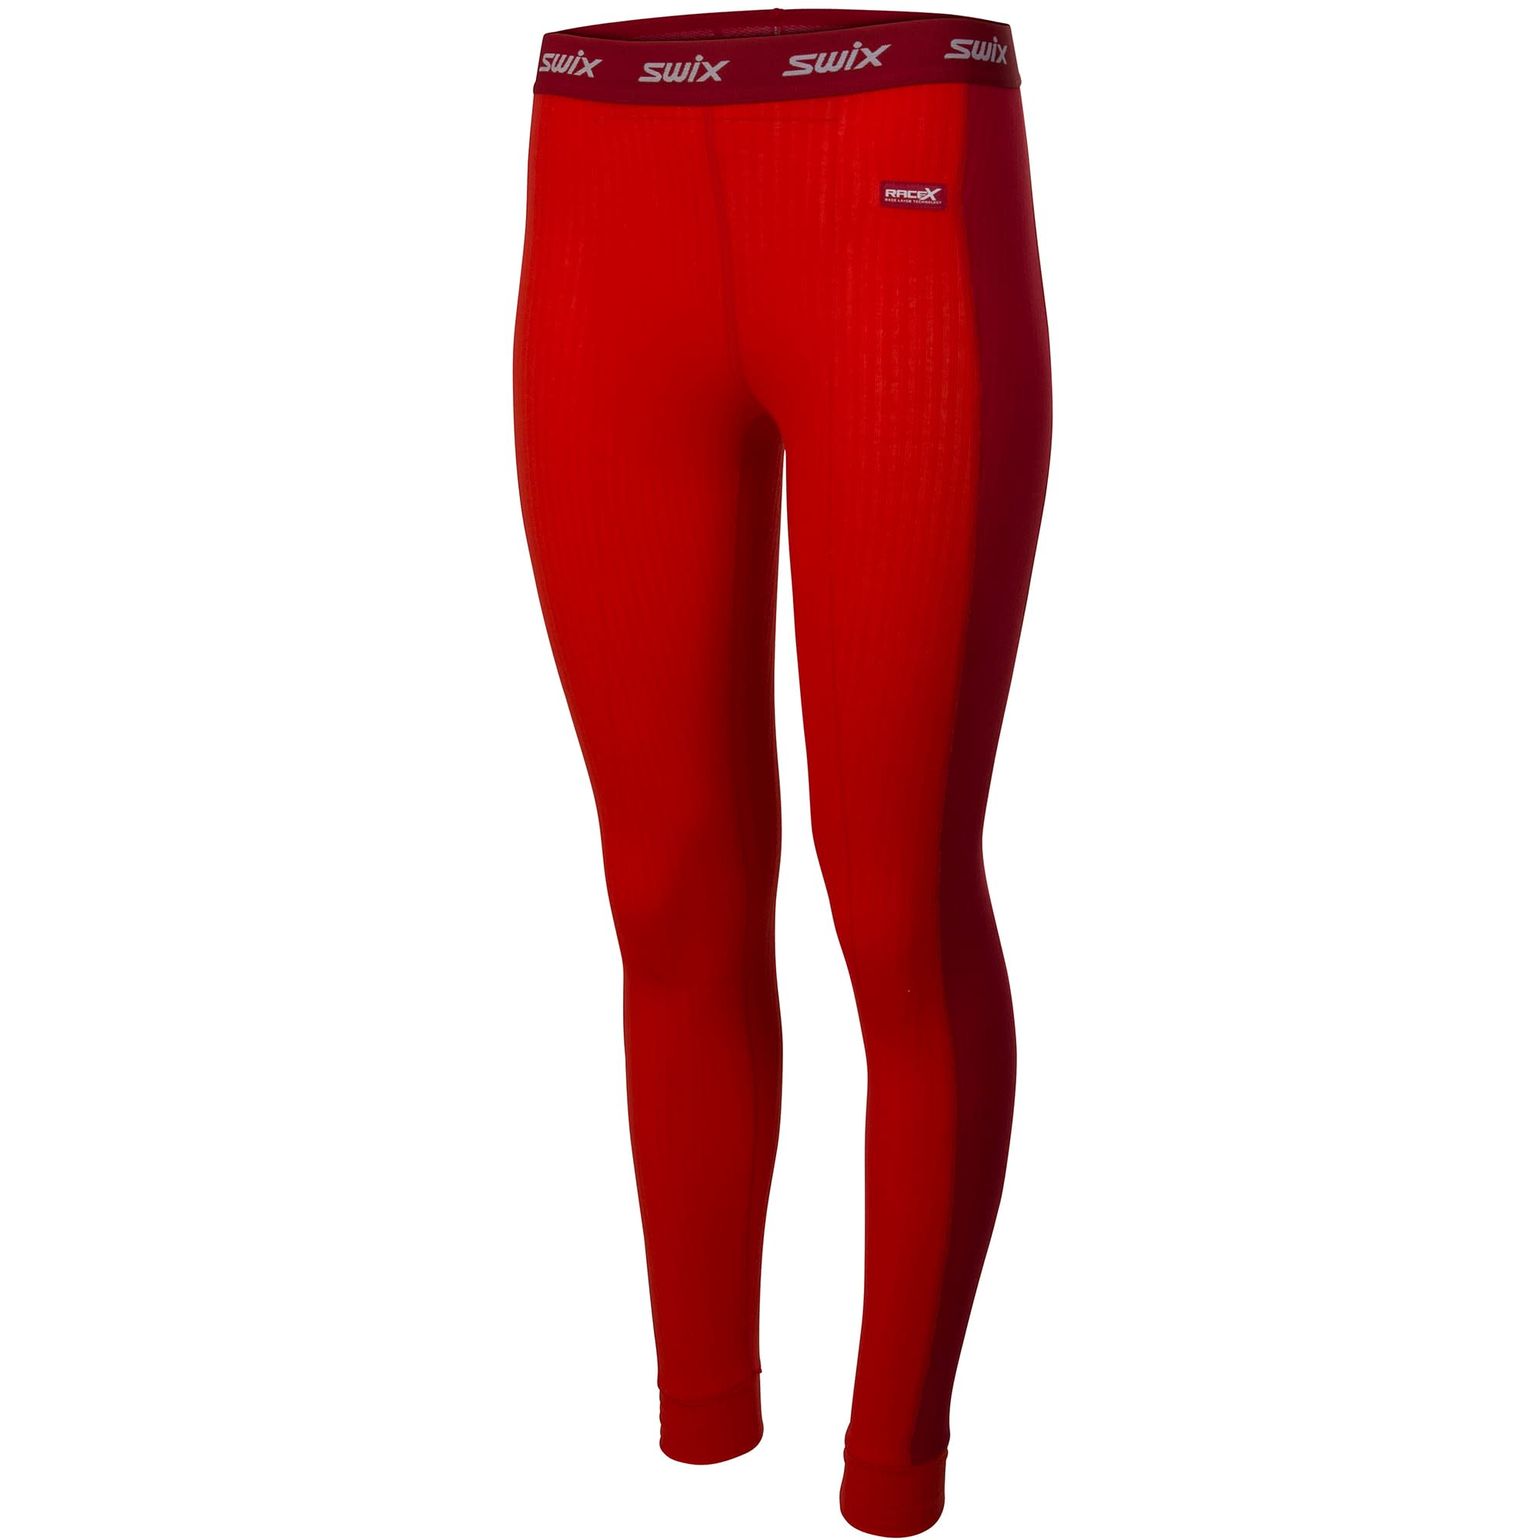 Women's RaceX Bodywear Pants Fiery red